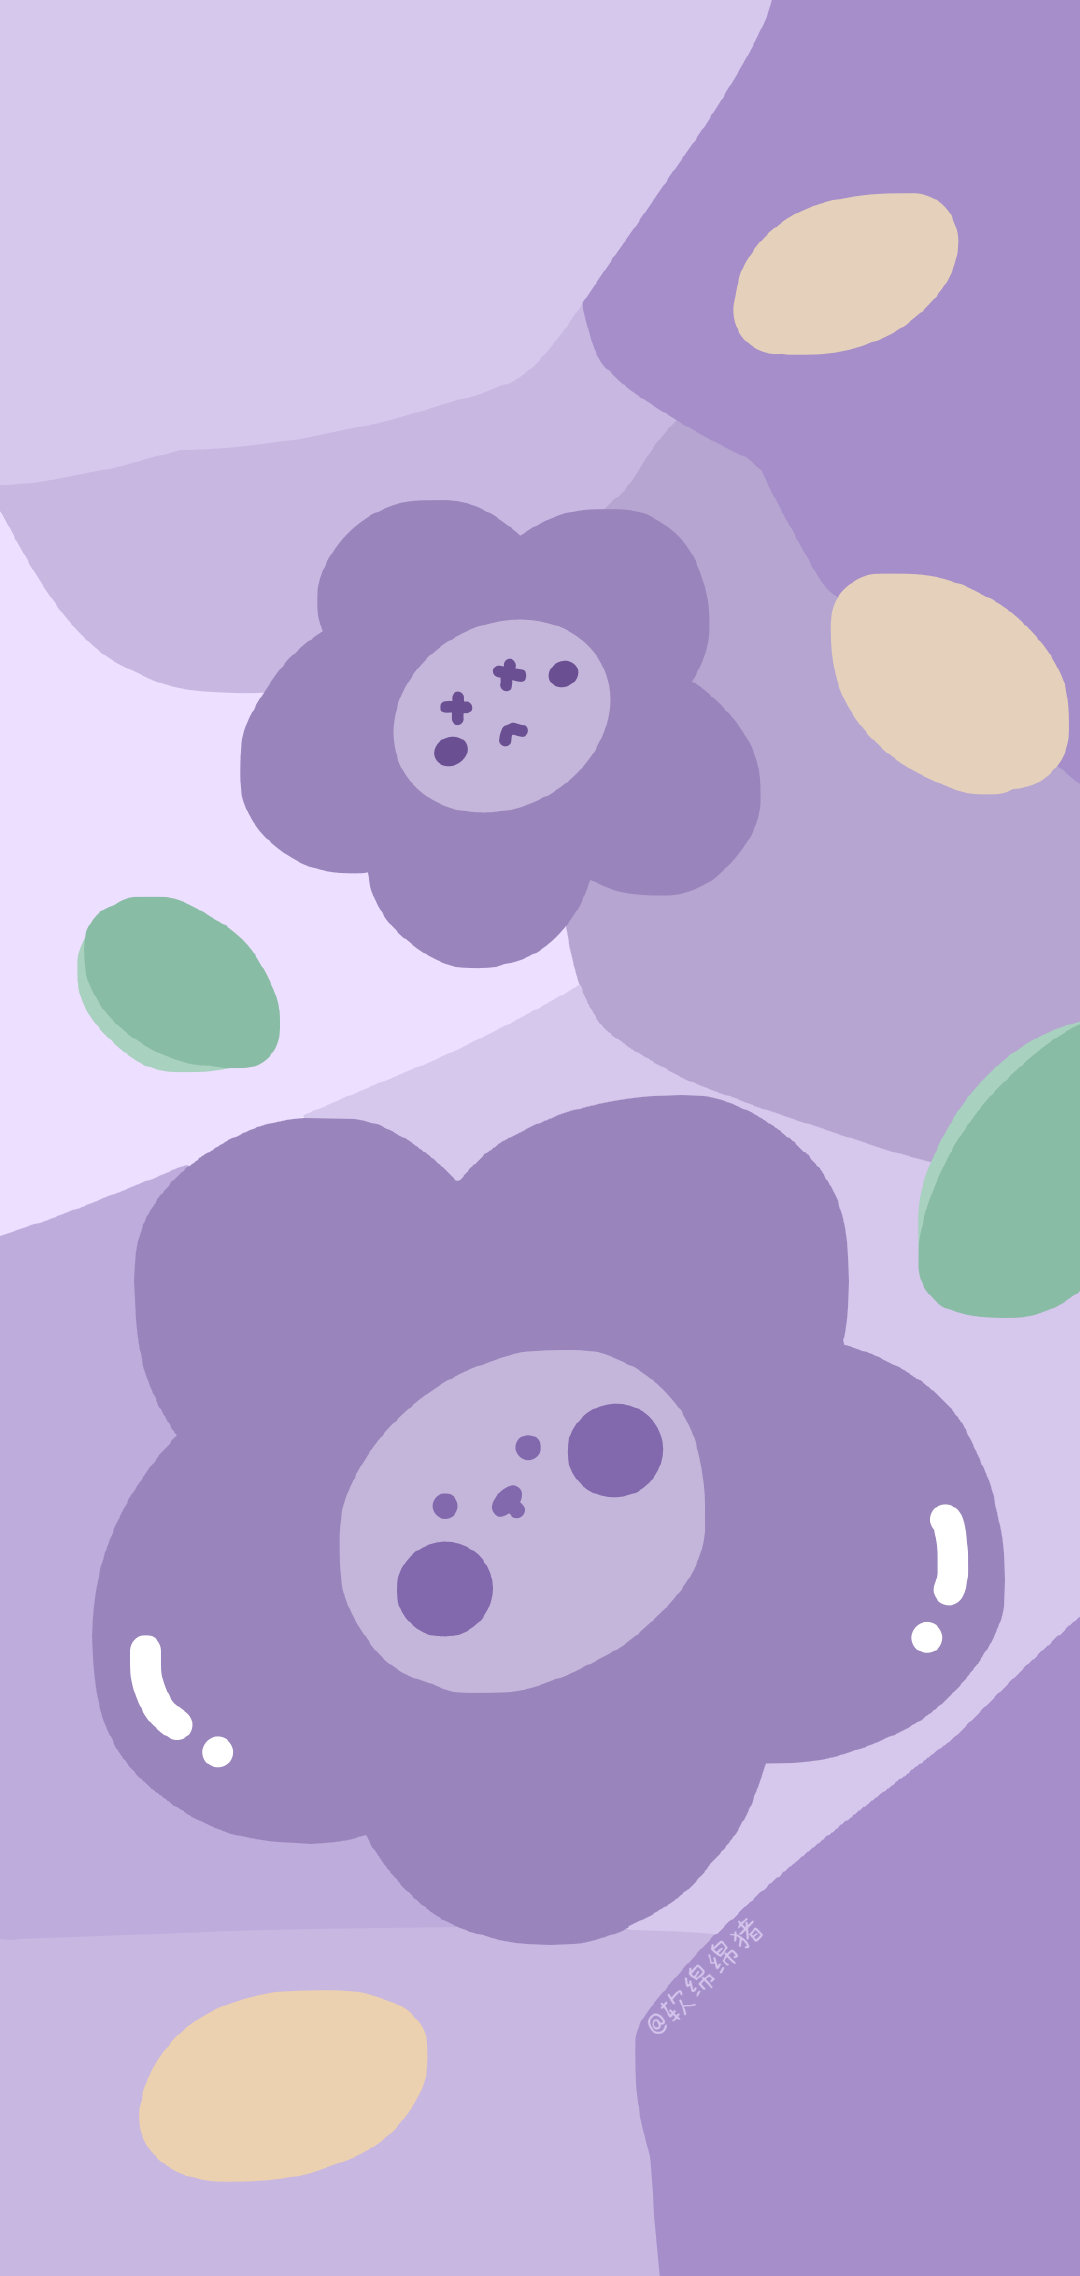 有没有美出高级感的紫色自然壁纸？ - 知乎